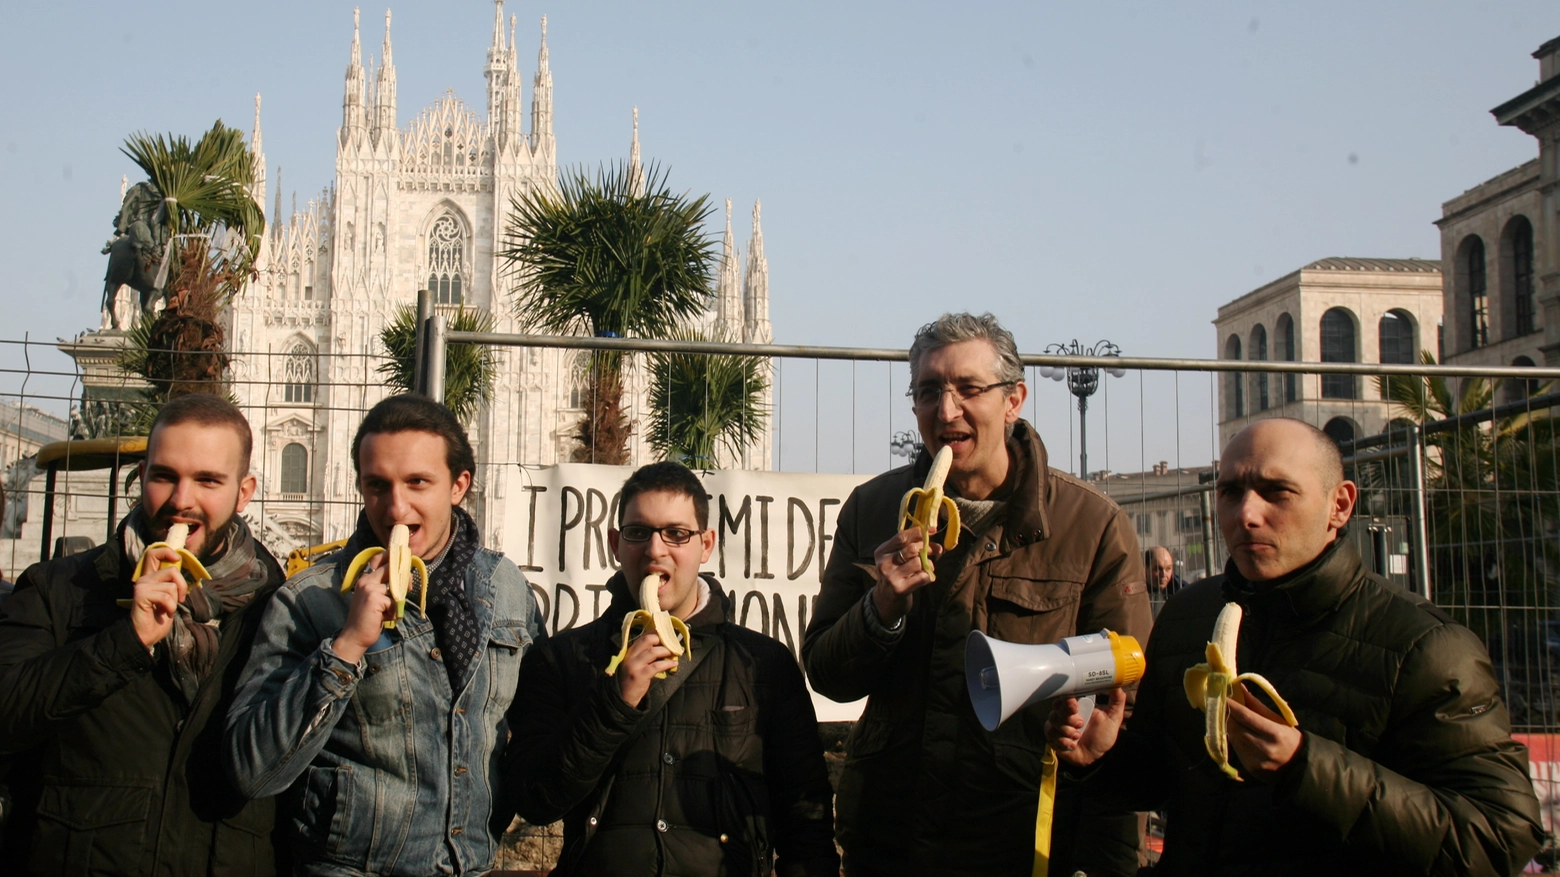 La protesta della Lega contro le palme in piazza Duomo (Newpress)